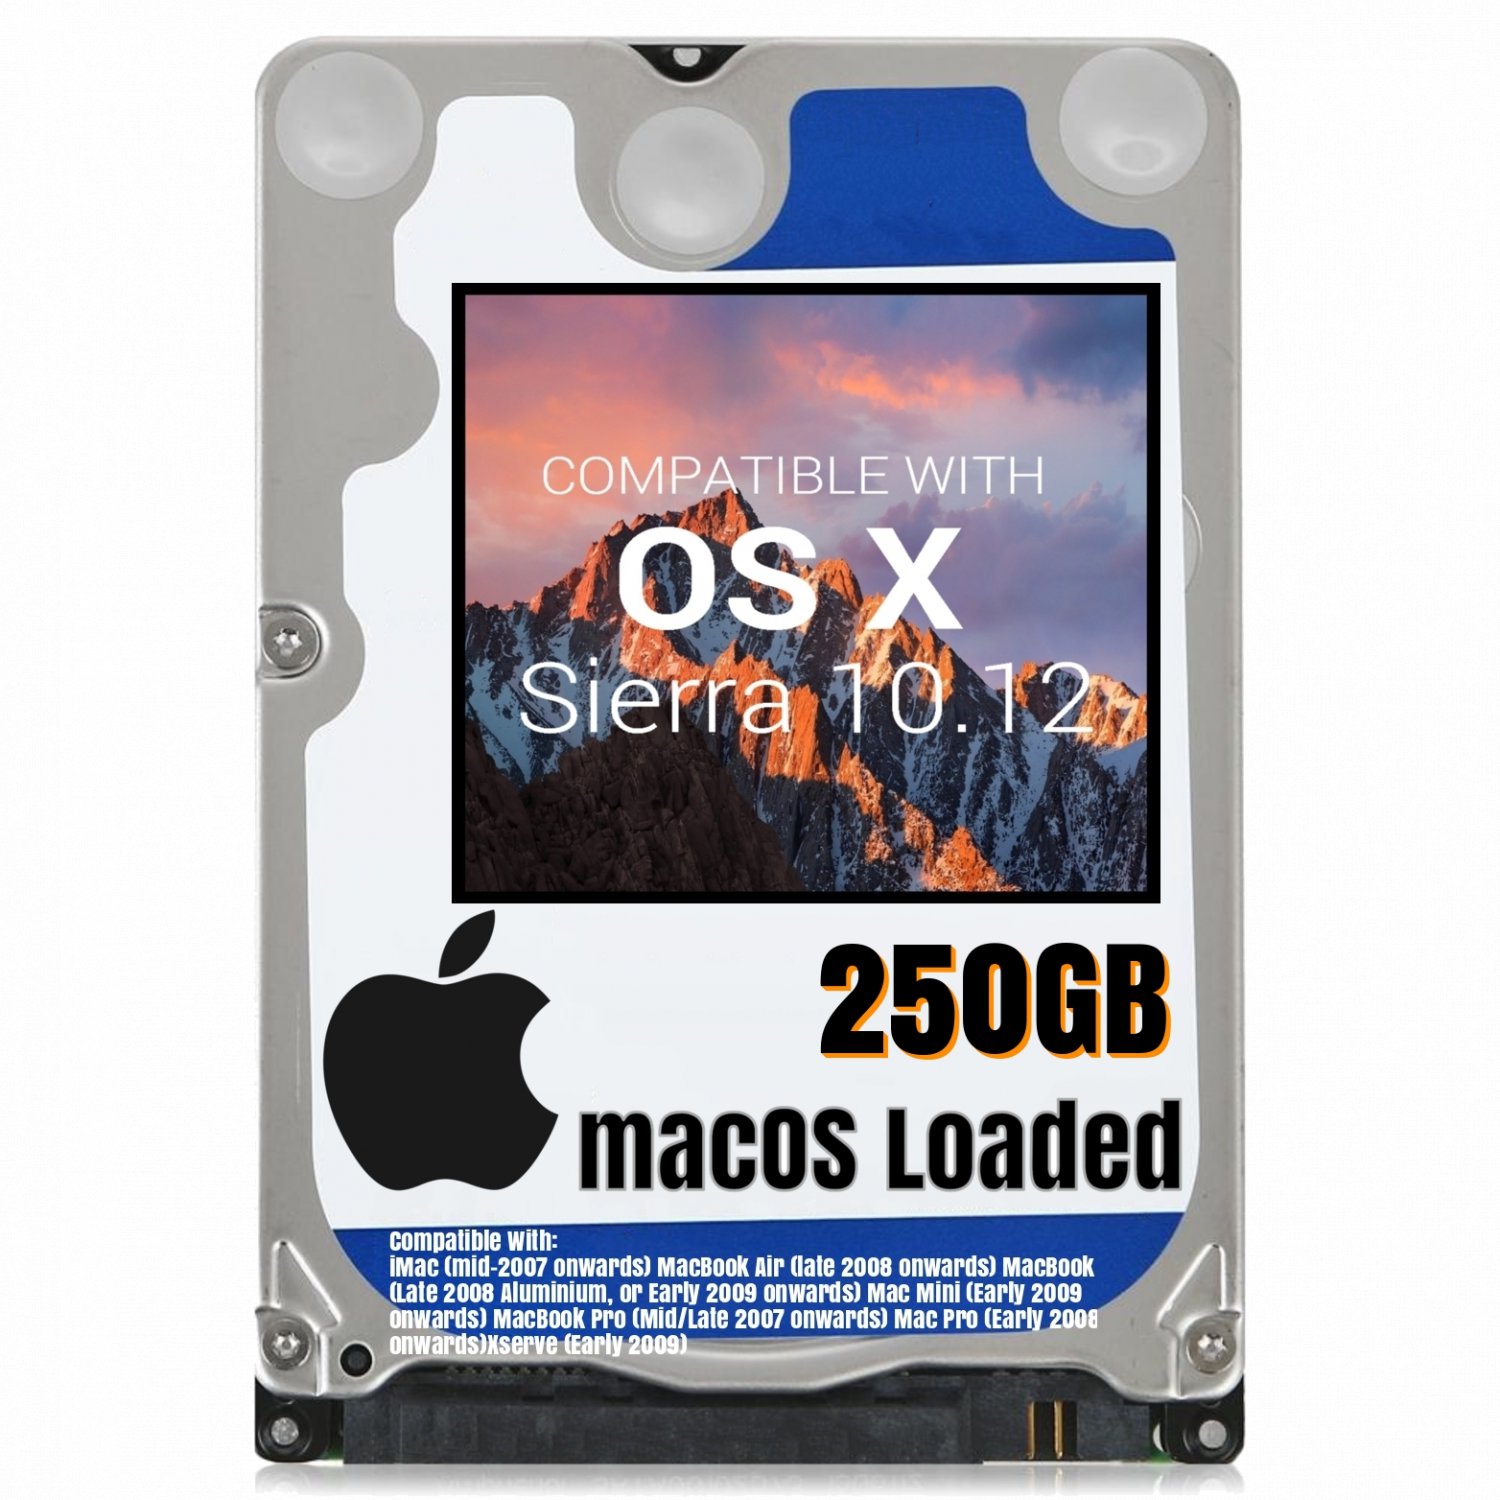 Macos Mac Os X 1012 Sierra Preloaded On 250gb Sata Hdd